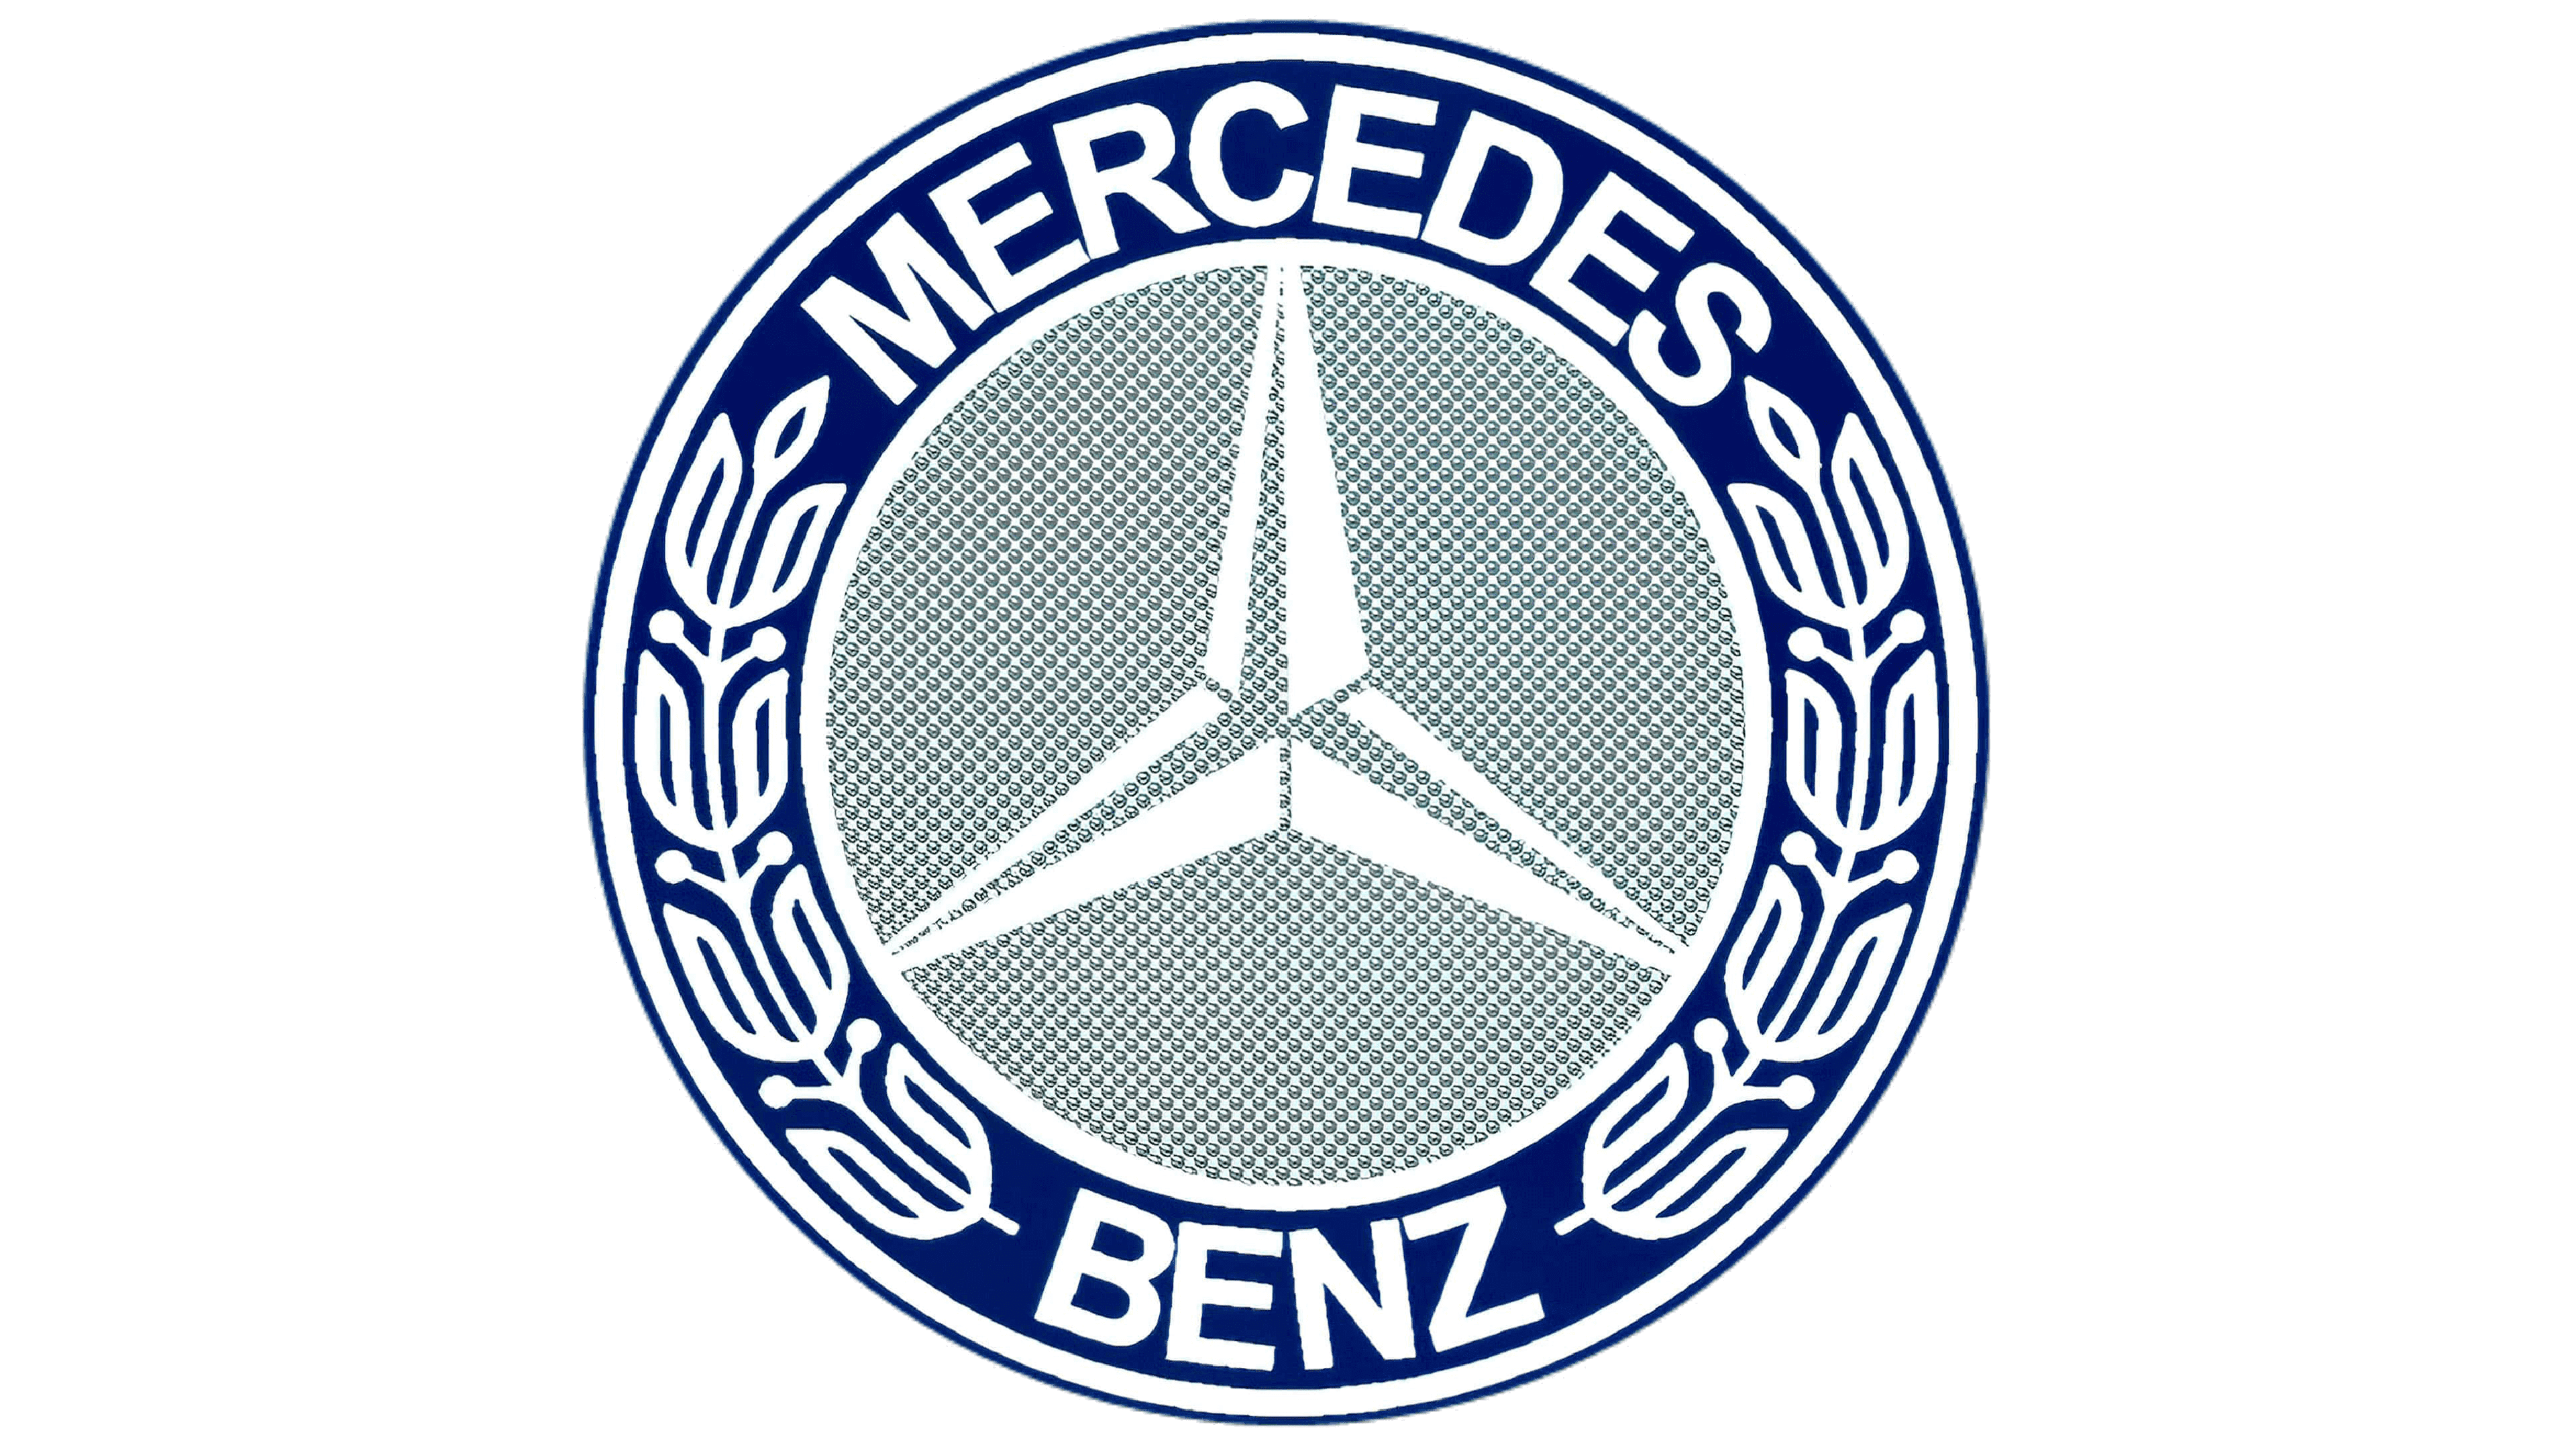 Mercedes benz logo png images | PNGEgg